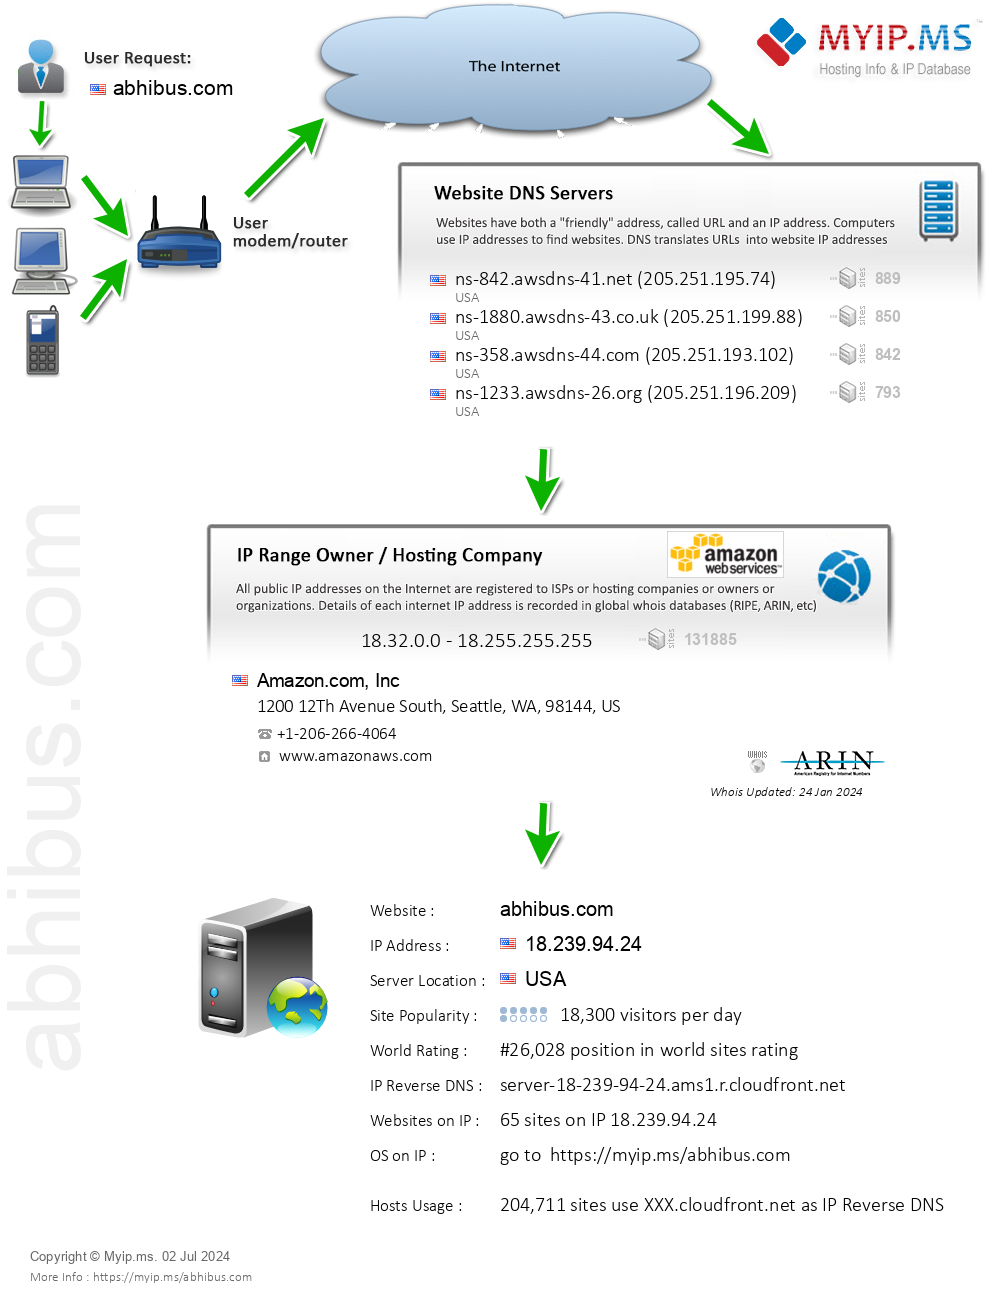 Abhibus.com - Website Hosting Visual IP Diagram